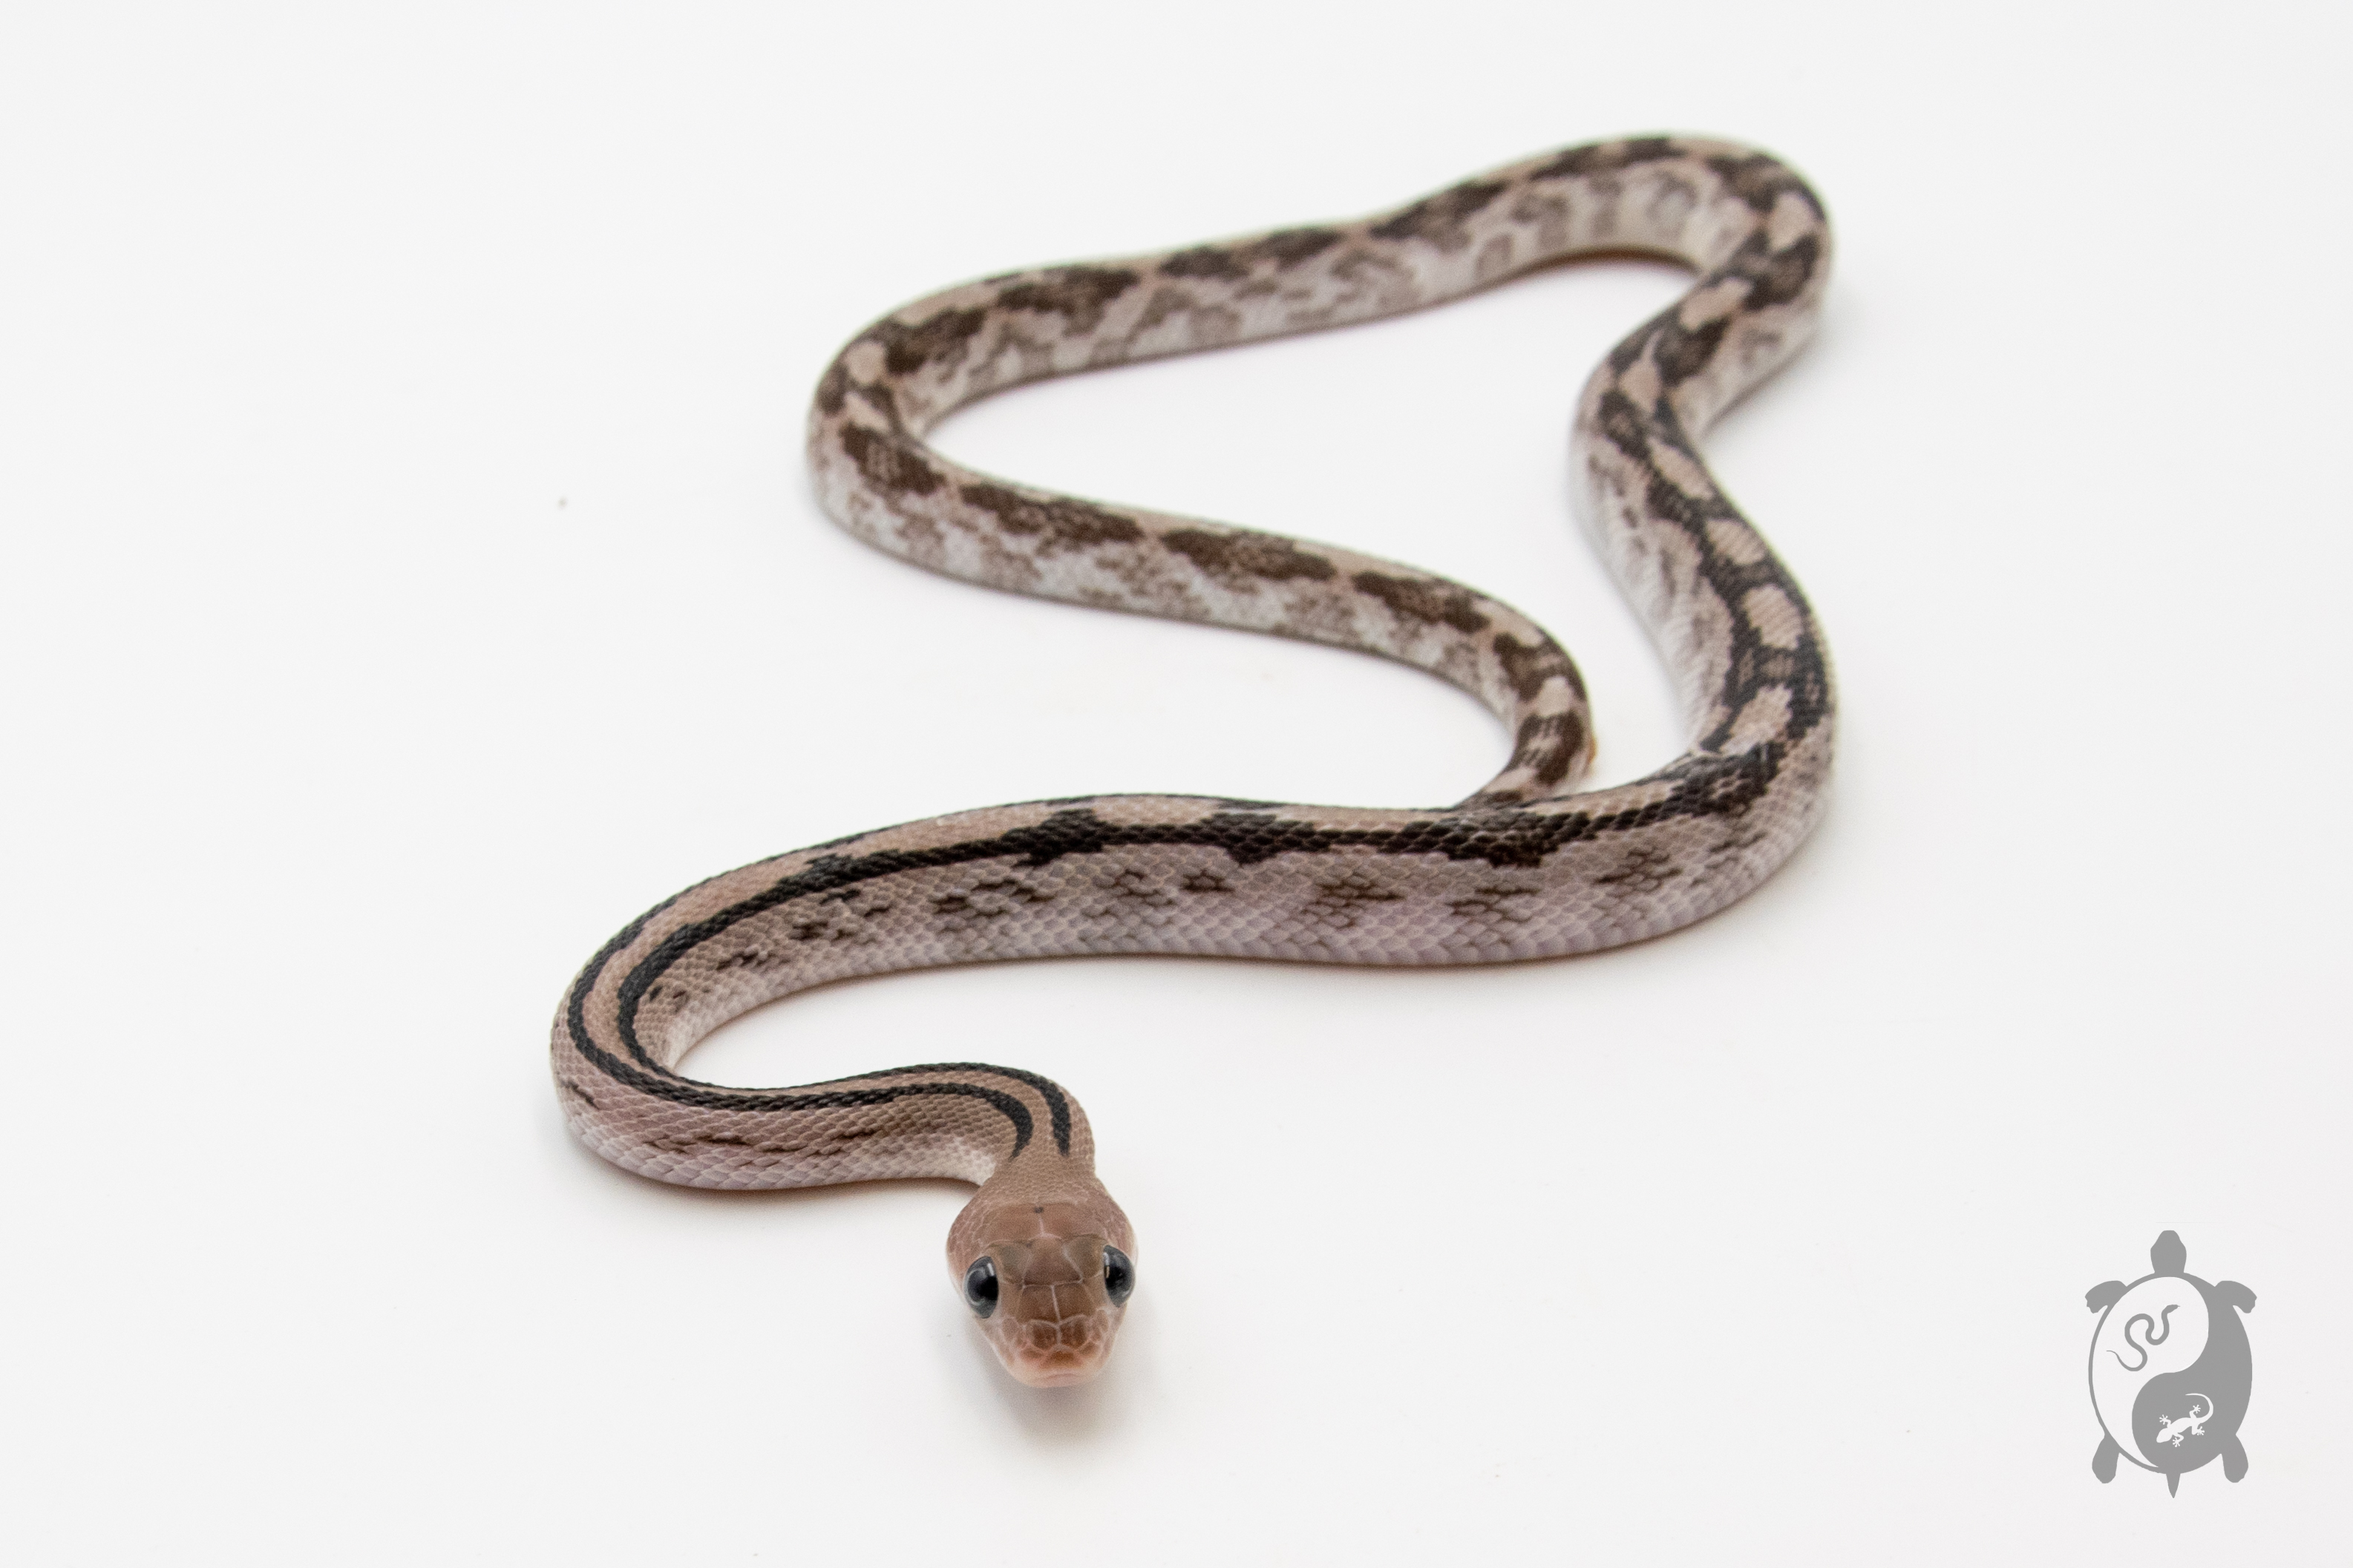 Bogertophis subocularis Axanthic - Serpent ratier du Trans-Pecos - Mâle